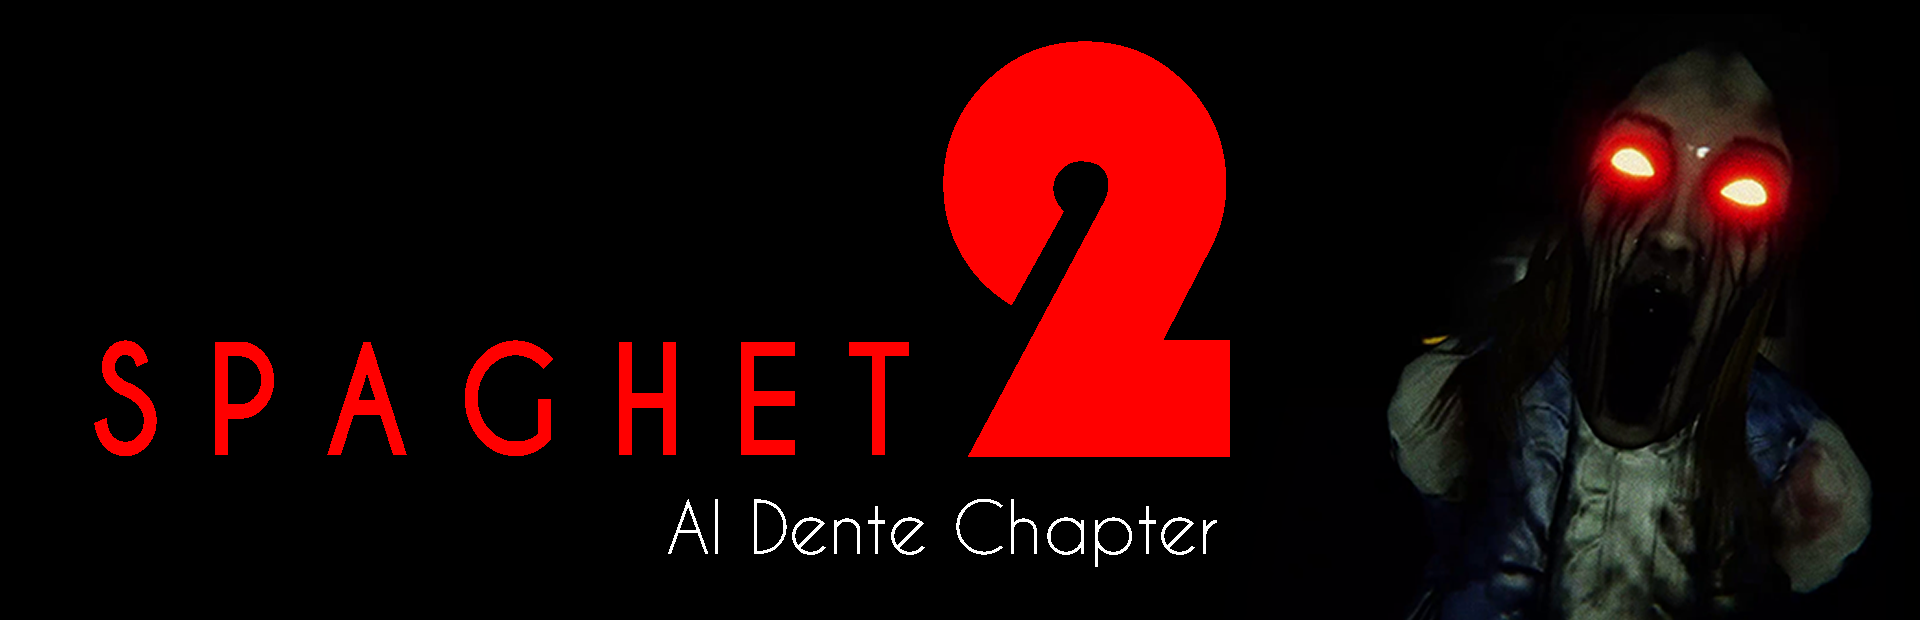 SPAGHET 2: AlDente Chapter